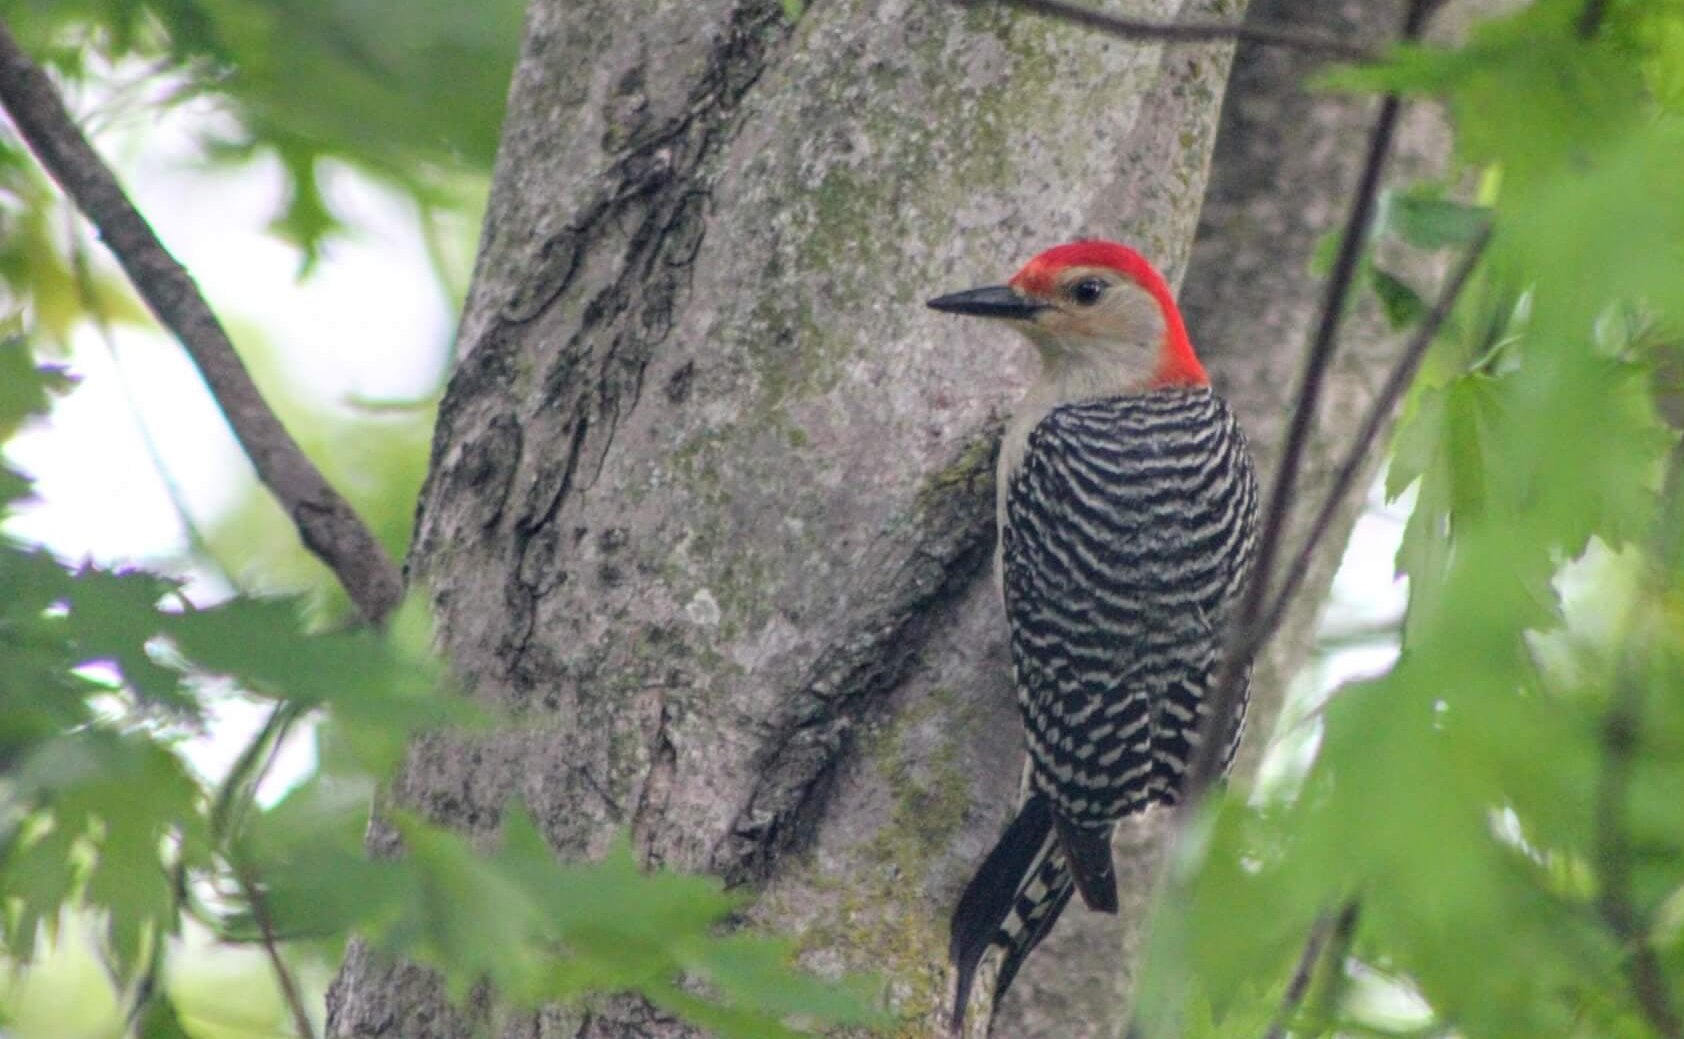 Red-bellied Woodpecker in a bird feeder